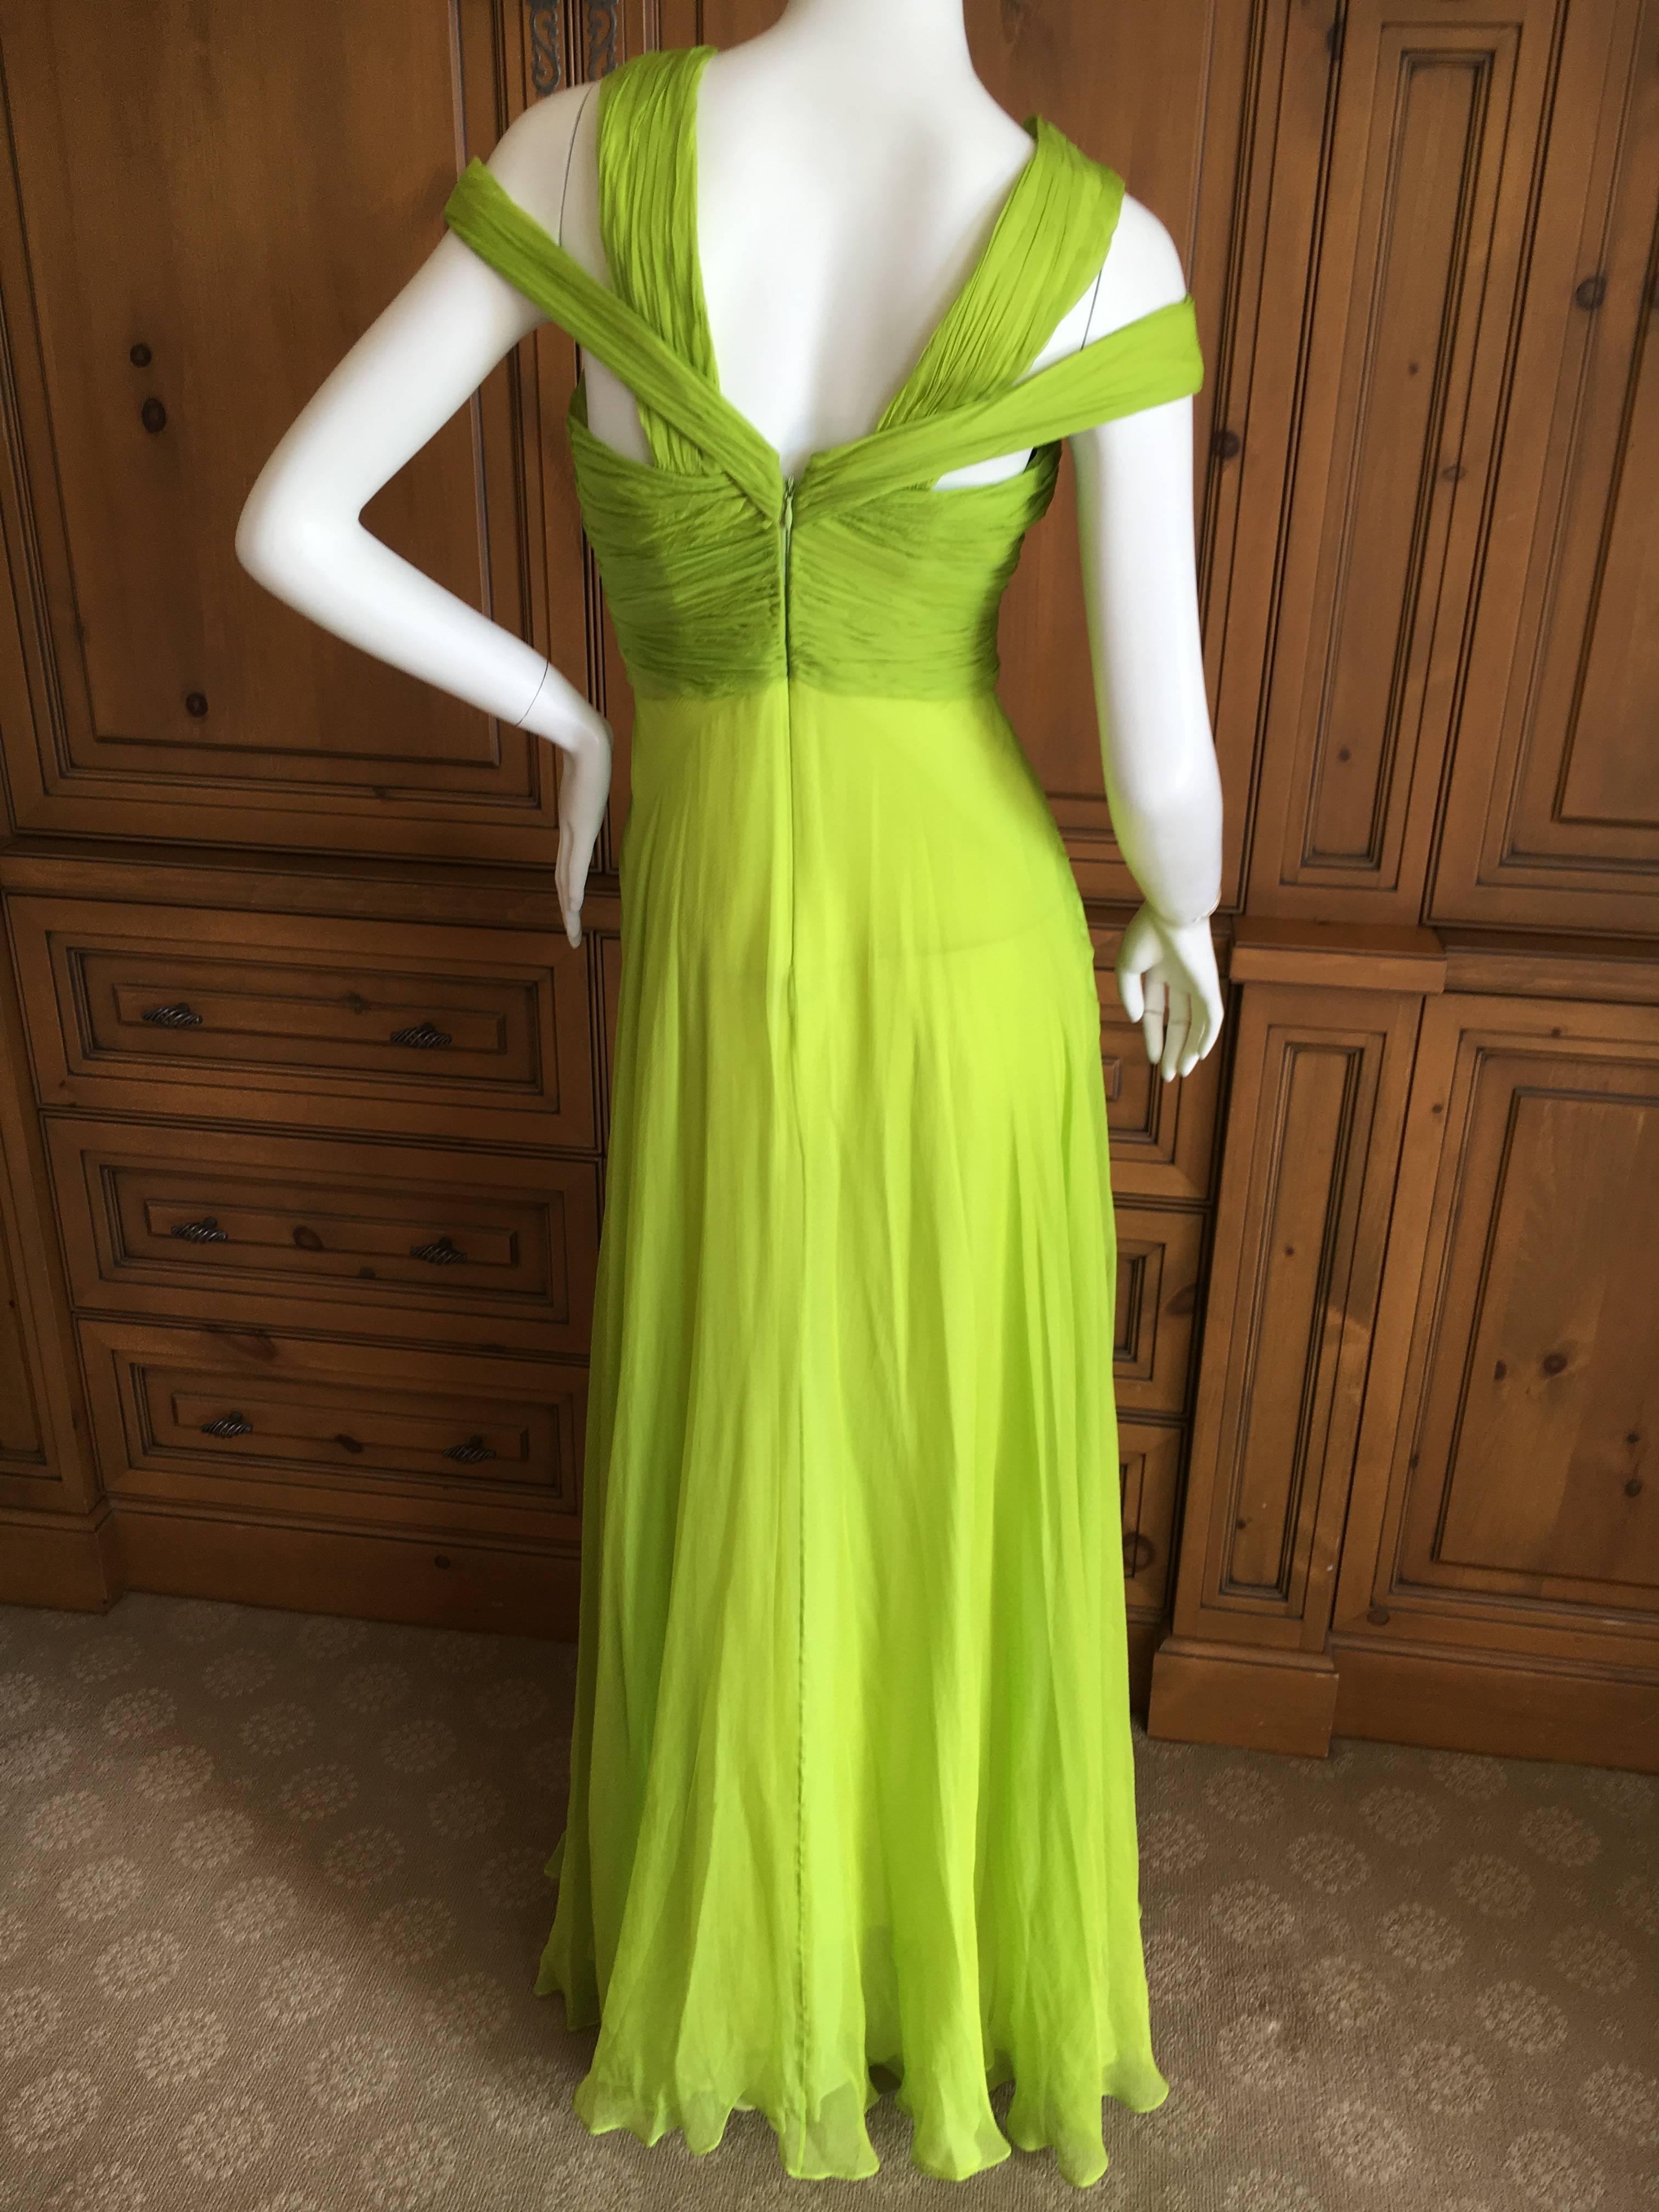 neon green silk dress